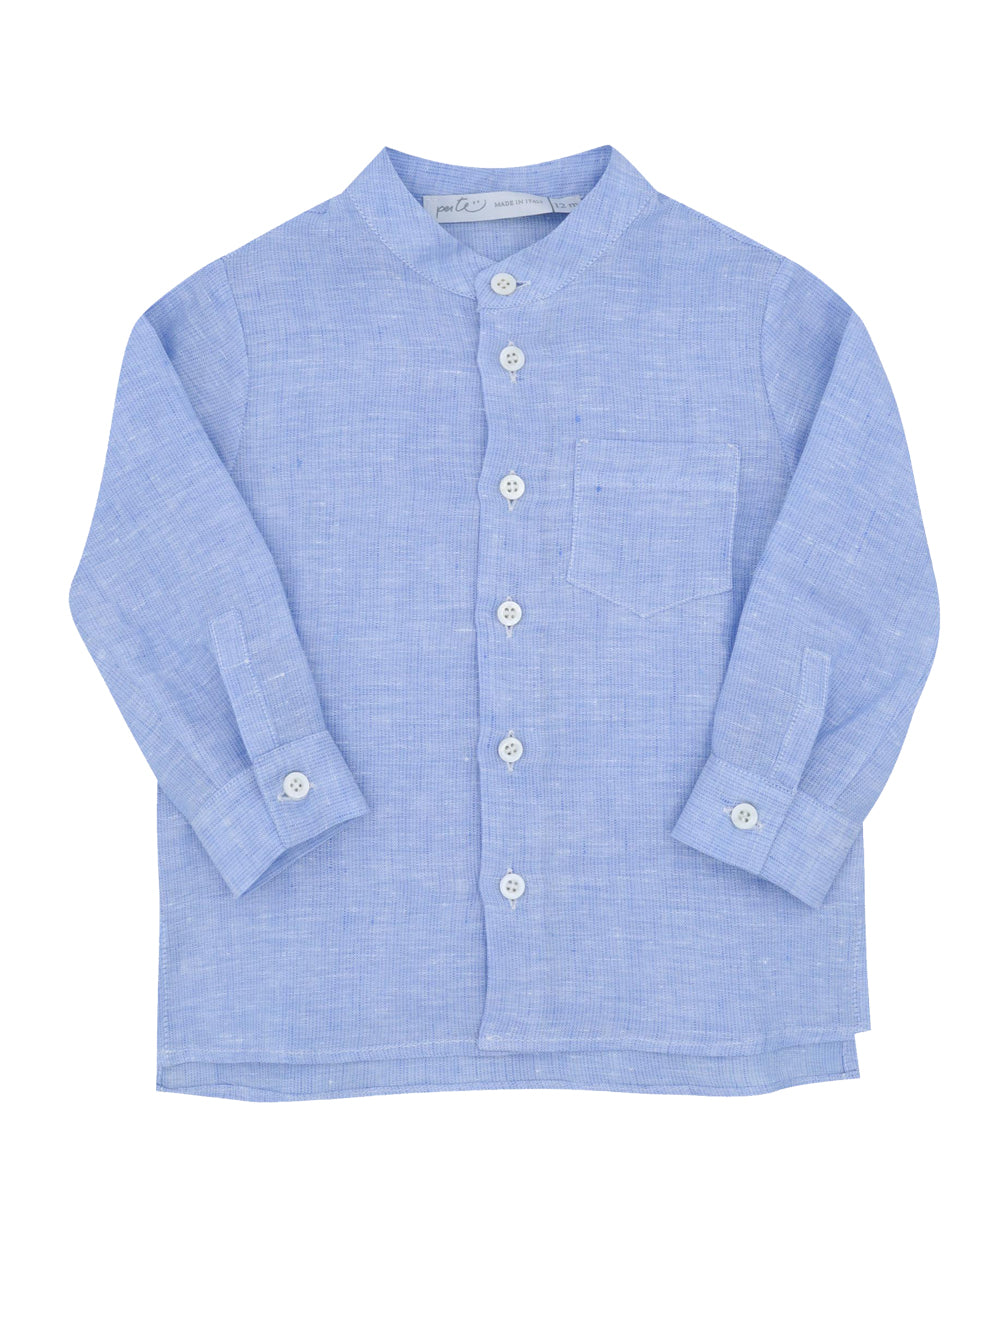 PREORDER: Aquamarine Mandarin Collar Shirt